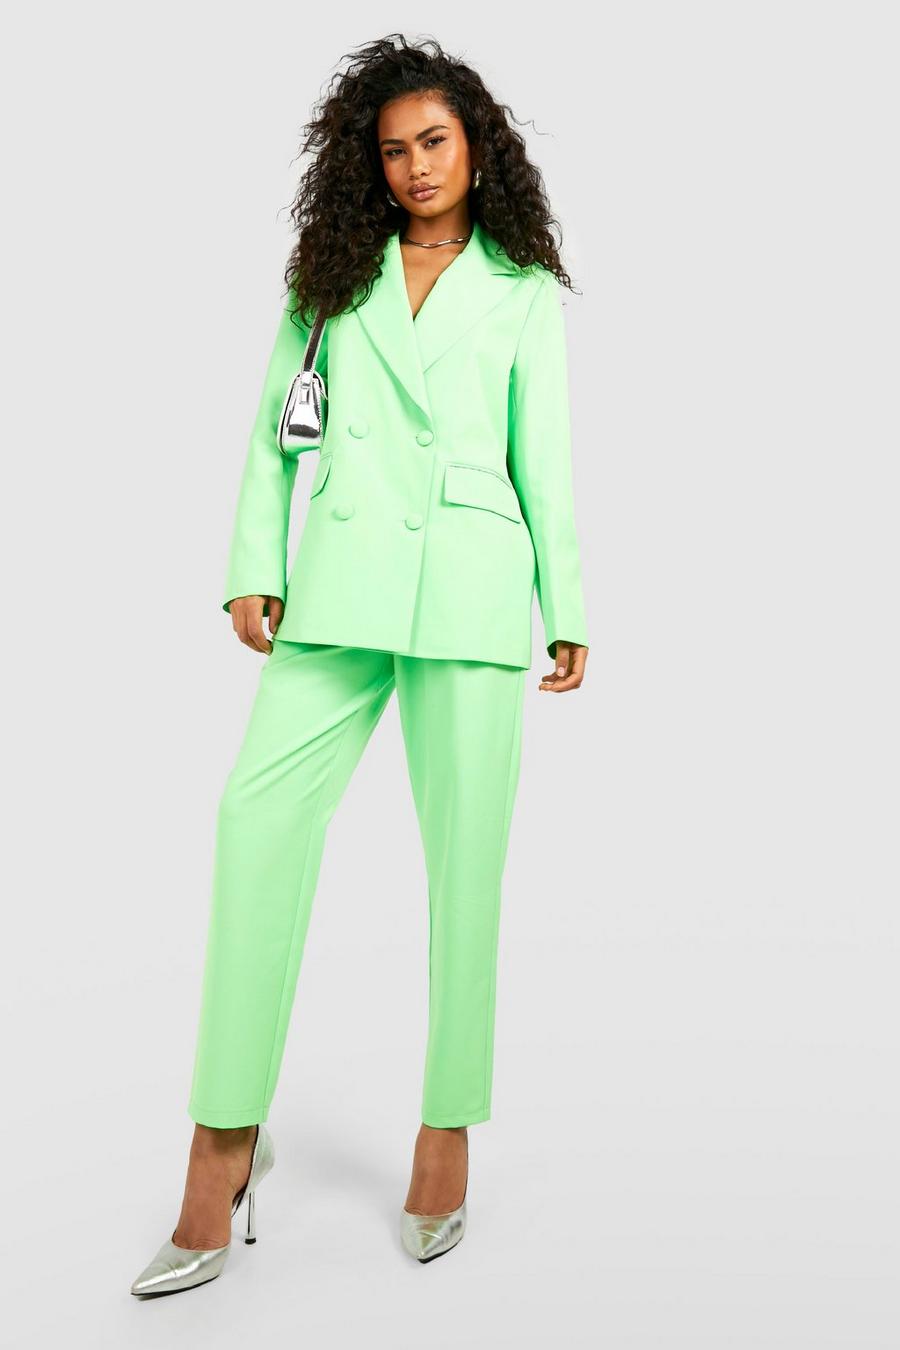 Pantalón entallado recto tobillero color fosforito, Neon-green